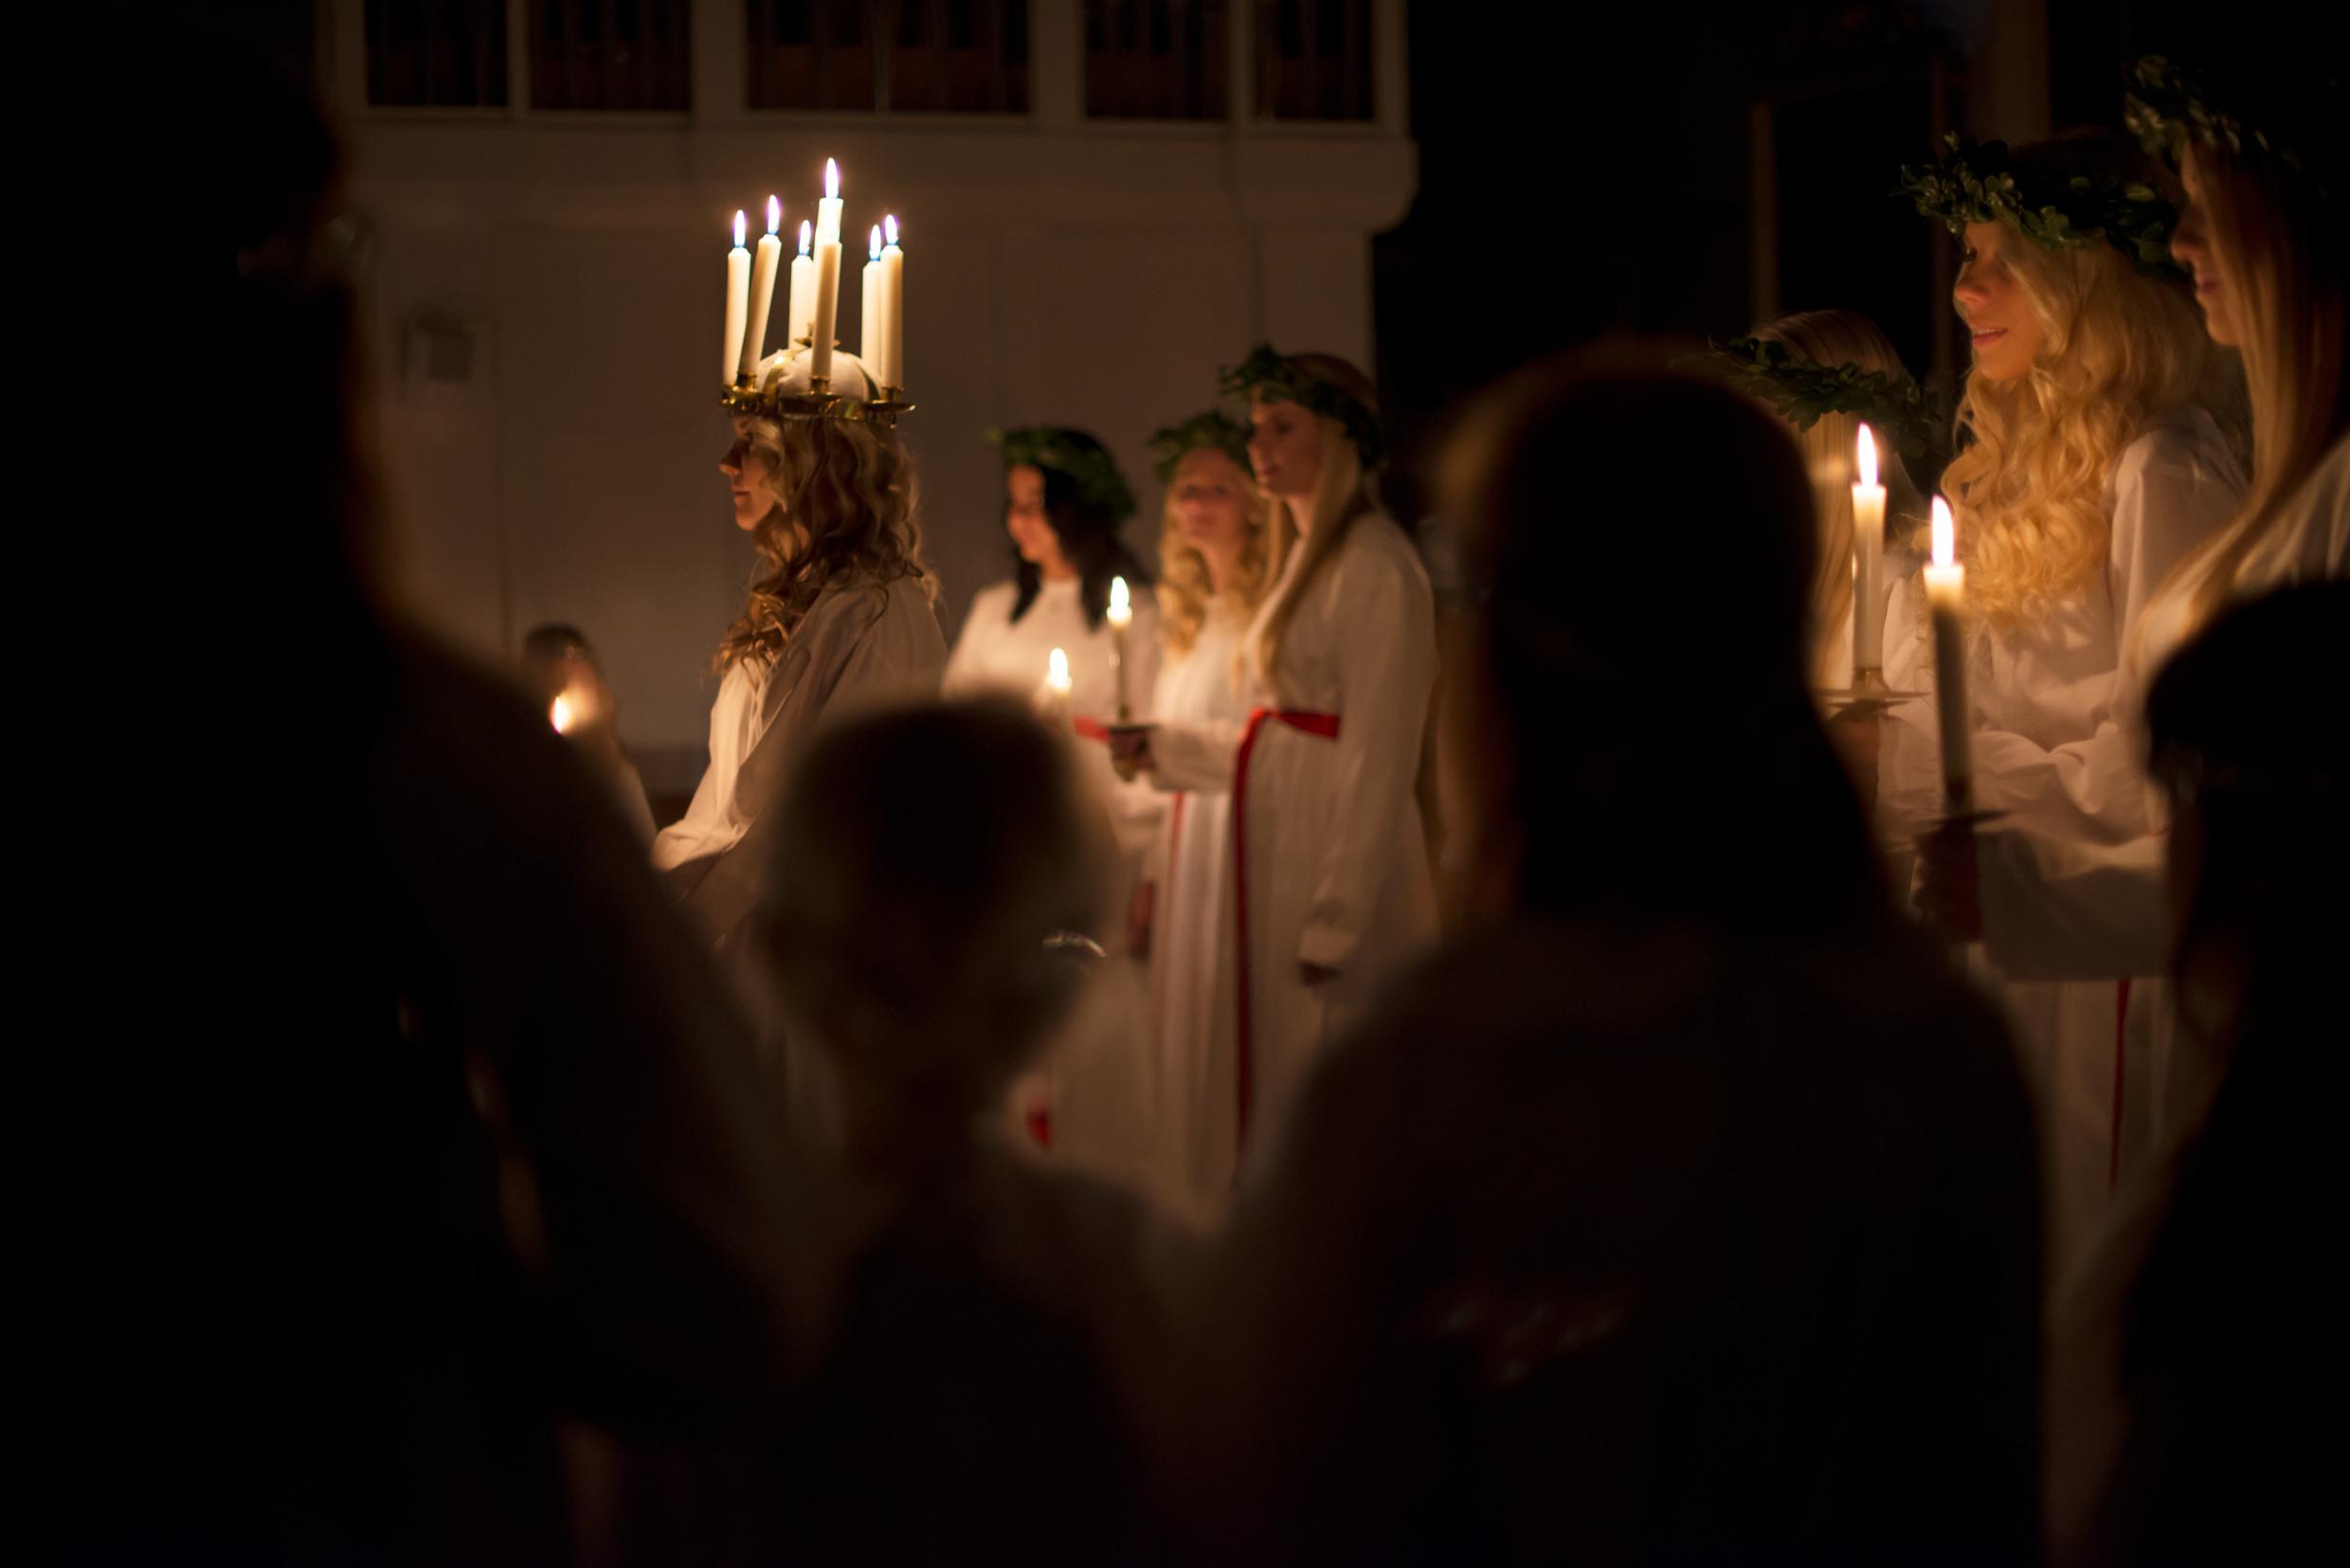 لوسيا وعلى رأسها إكليل من الشموع المضاءة ويقف خلفها الخادمات وهن يحملن في أيديهن شمعة مضاءة.